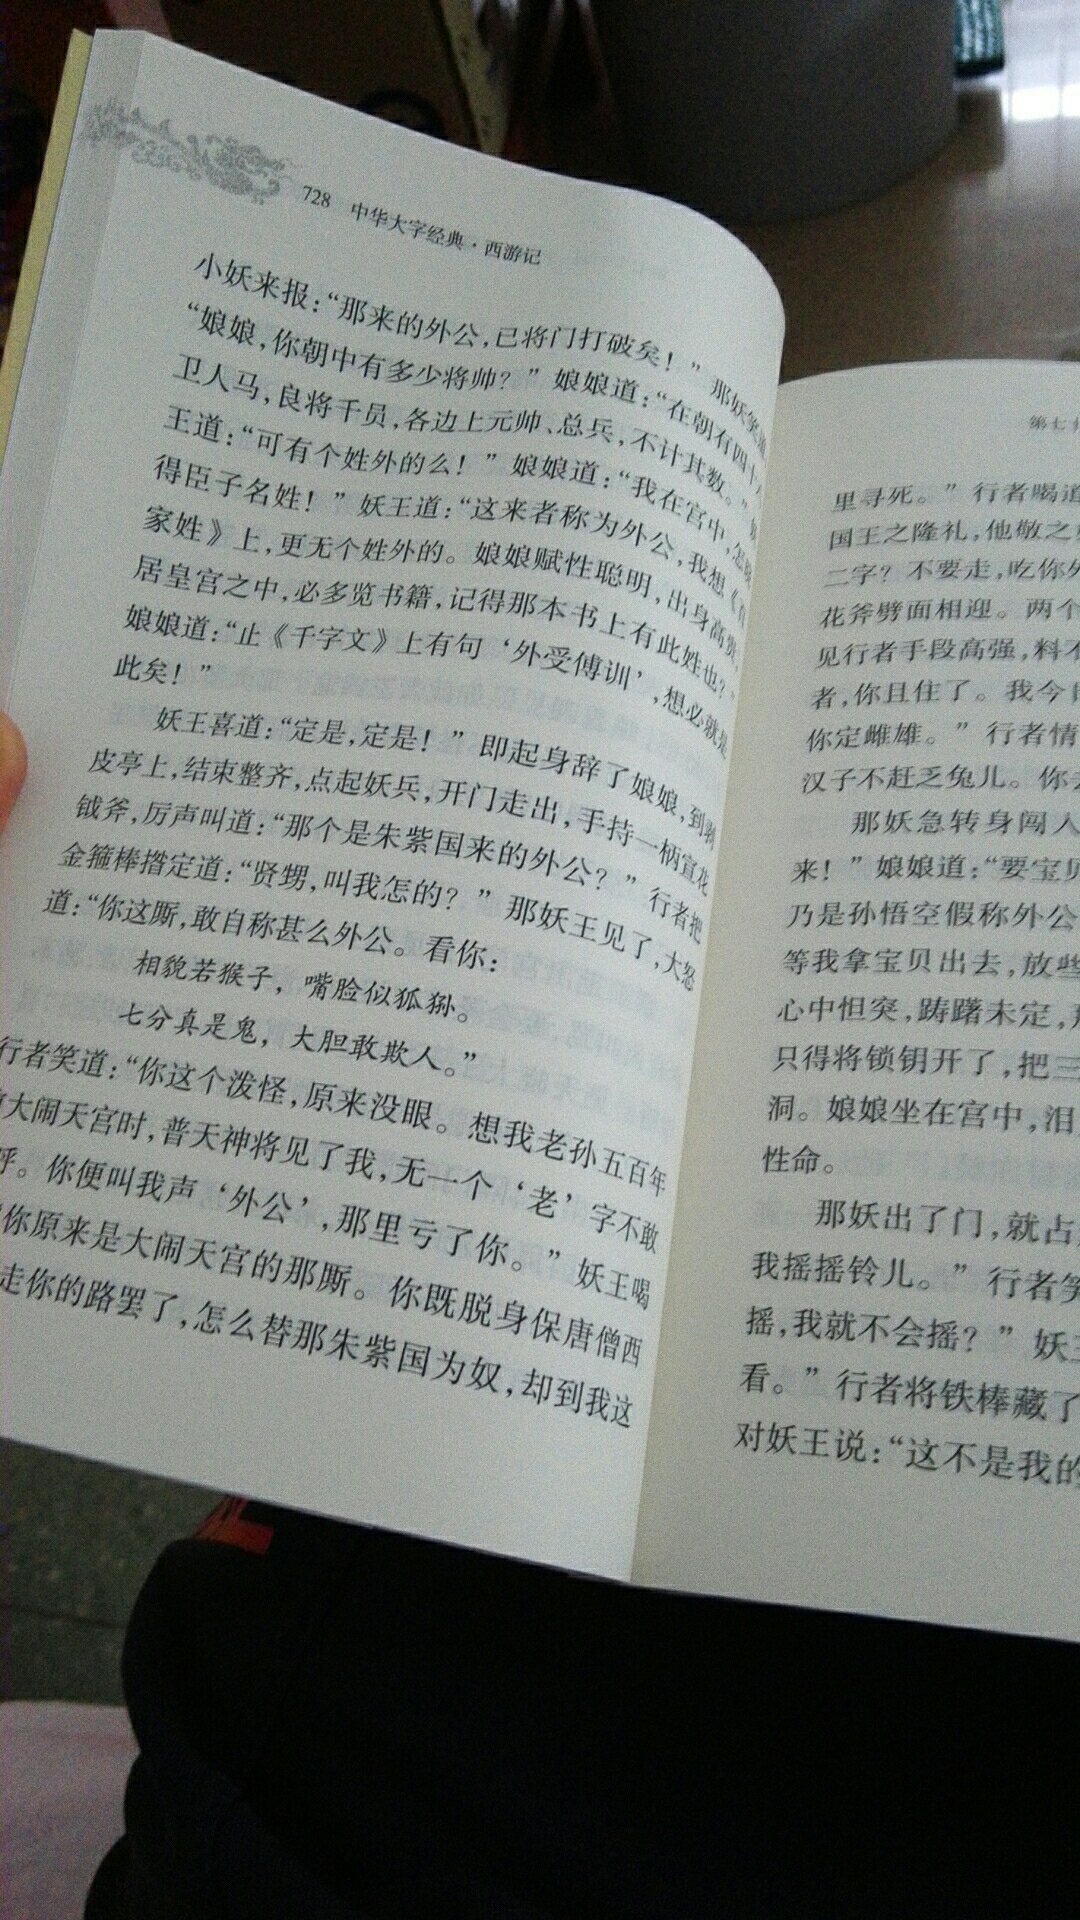 这个是中华书局出品的大字版，非常适合阅读。印刷质量也挺好。相信品牌。相信中华书局。